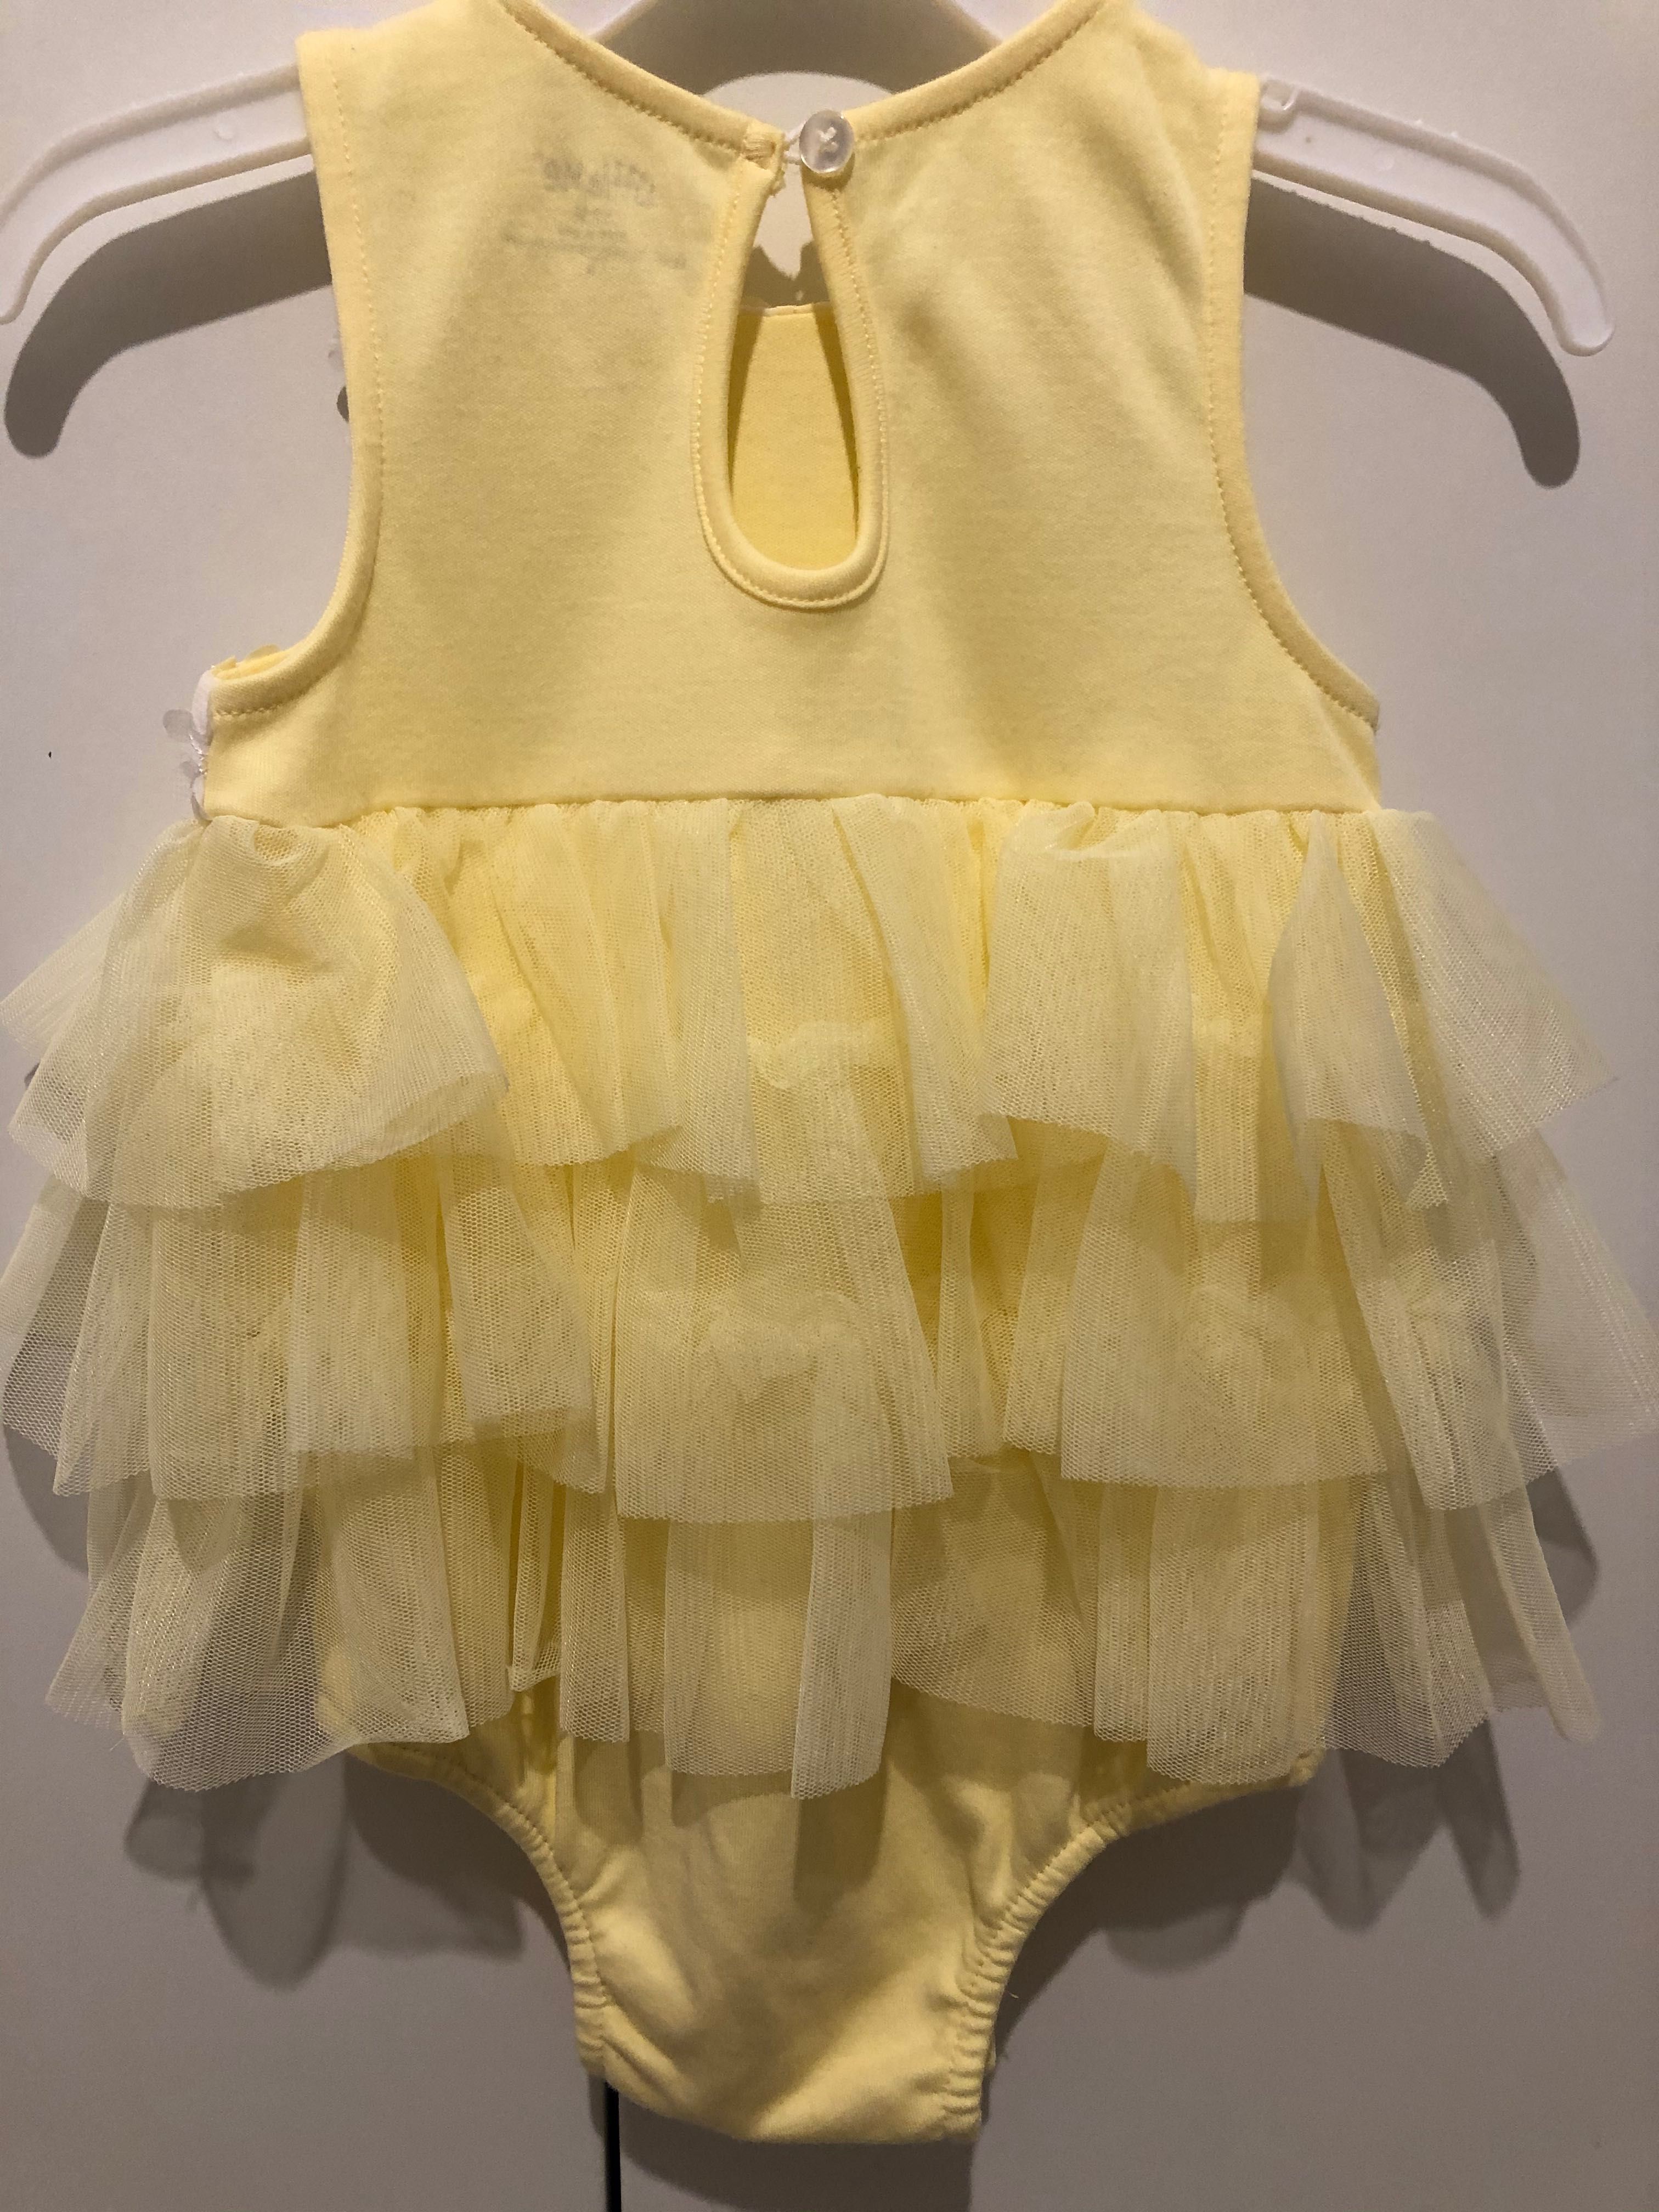 Луксозна жълта боди-рокля с воали от тюл и цветя, 9-12 м, 80 см.